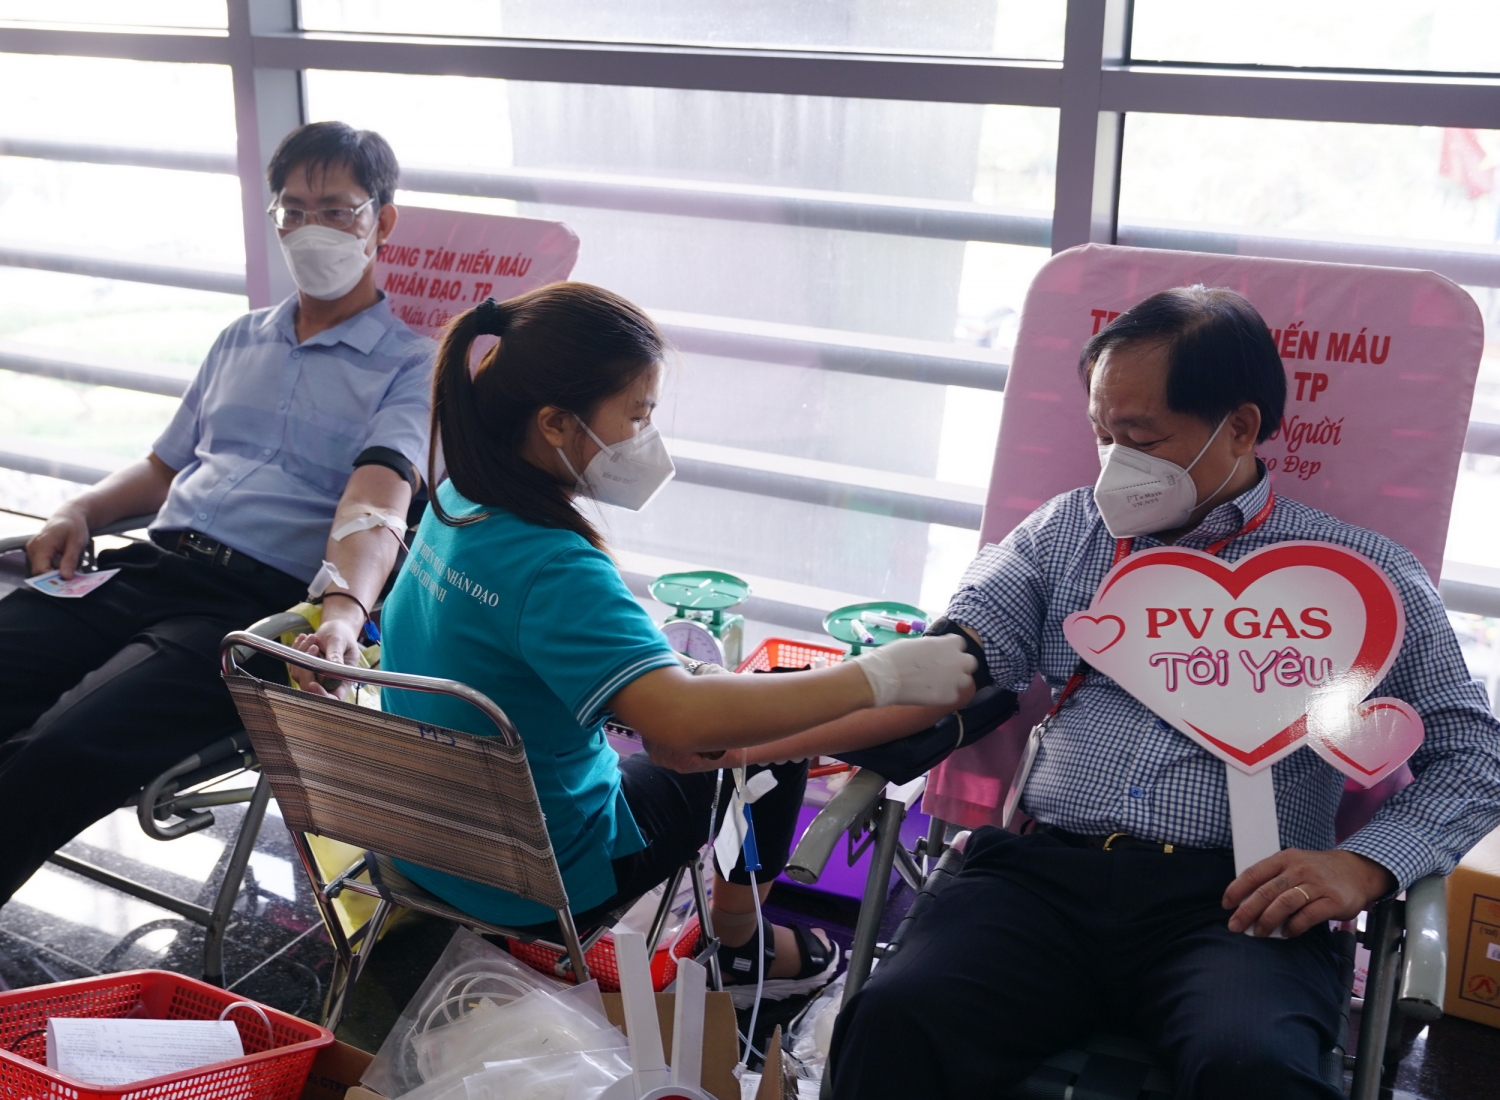 Ngày hội hiến máu PV GAS – Một giọt máu triệu tấm lòng